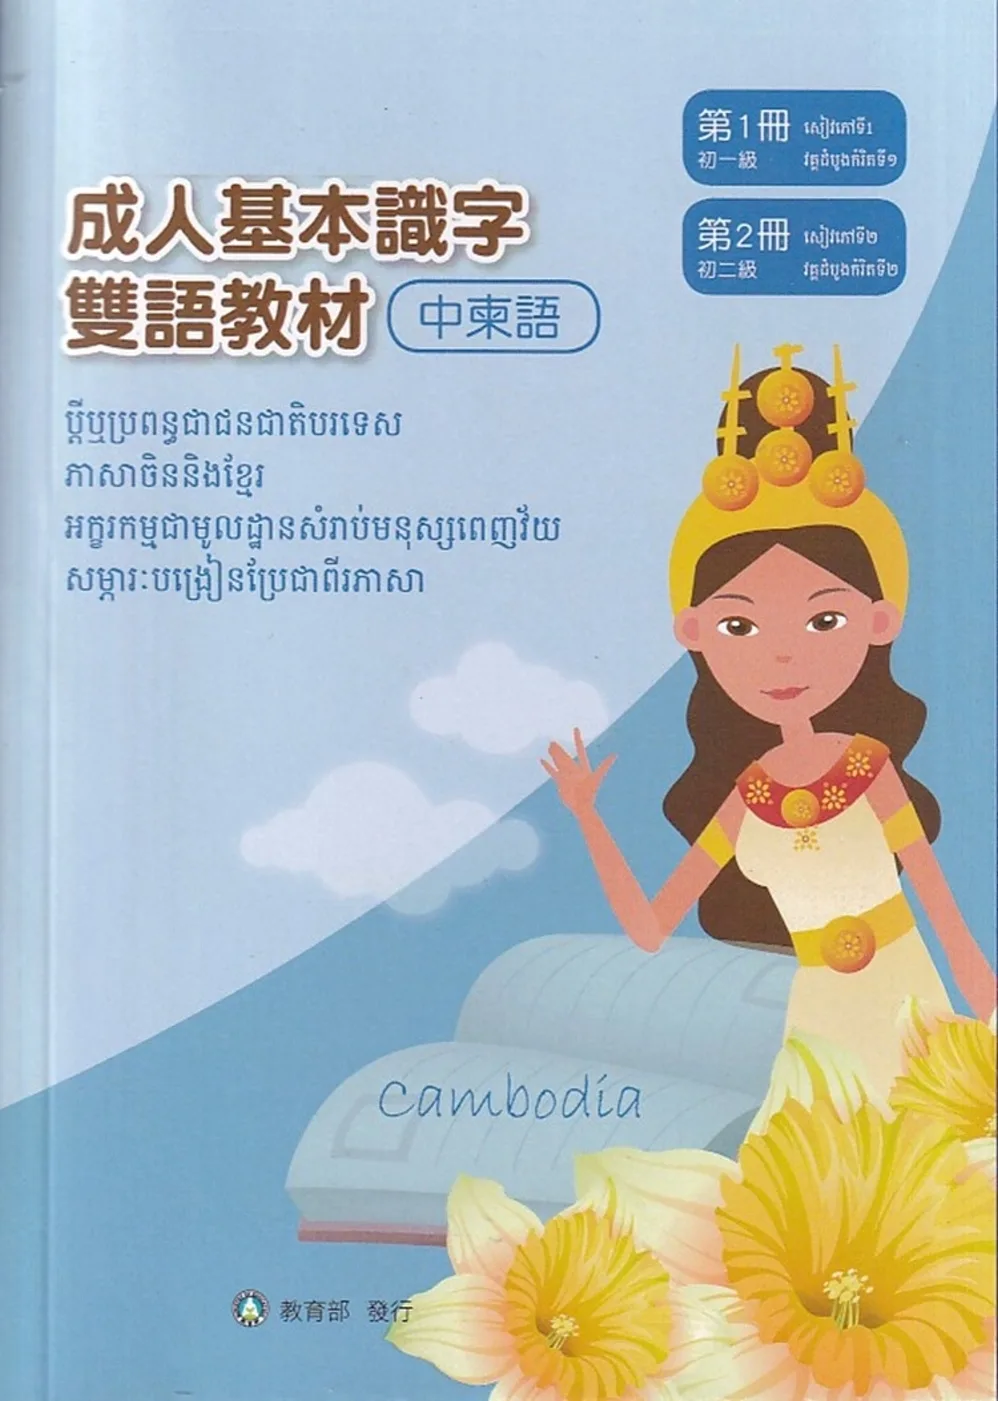 成人基本識字雙語教材(中柬語)